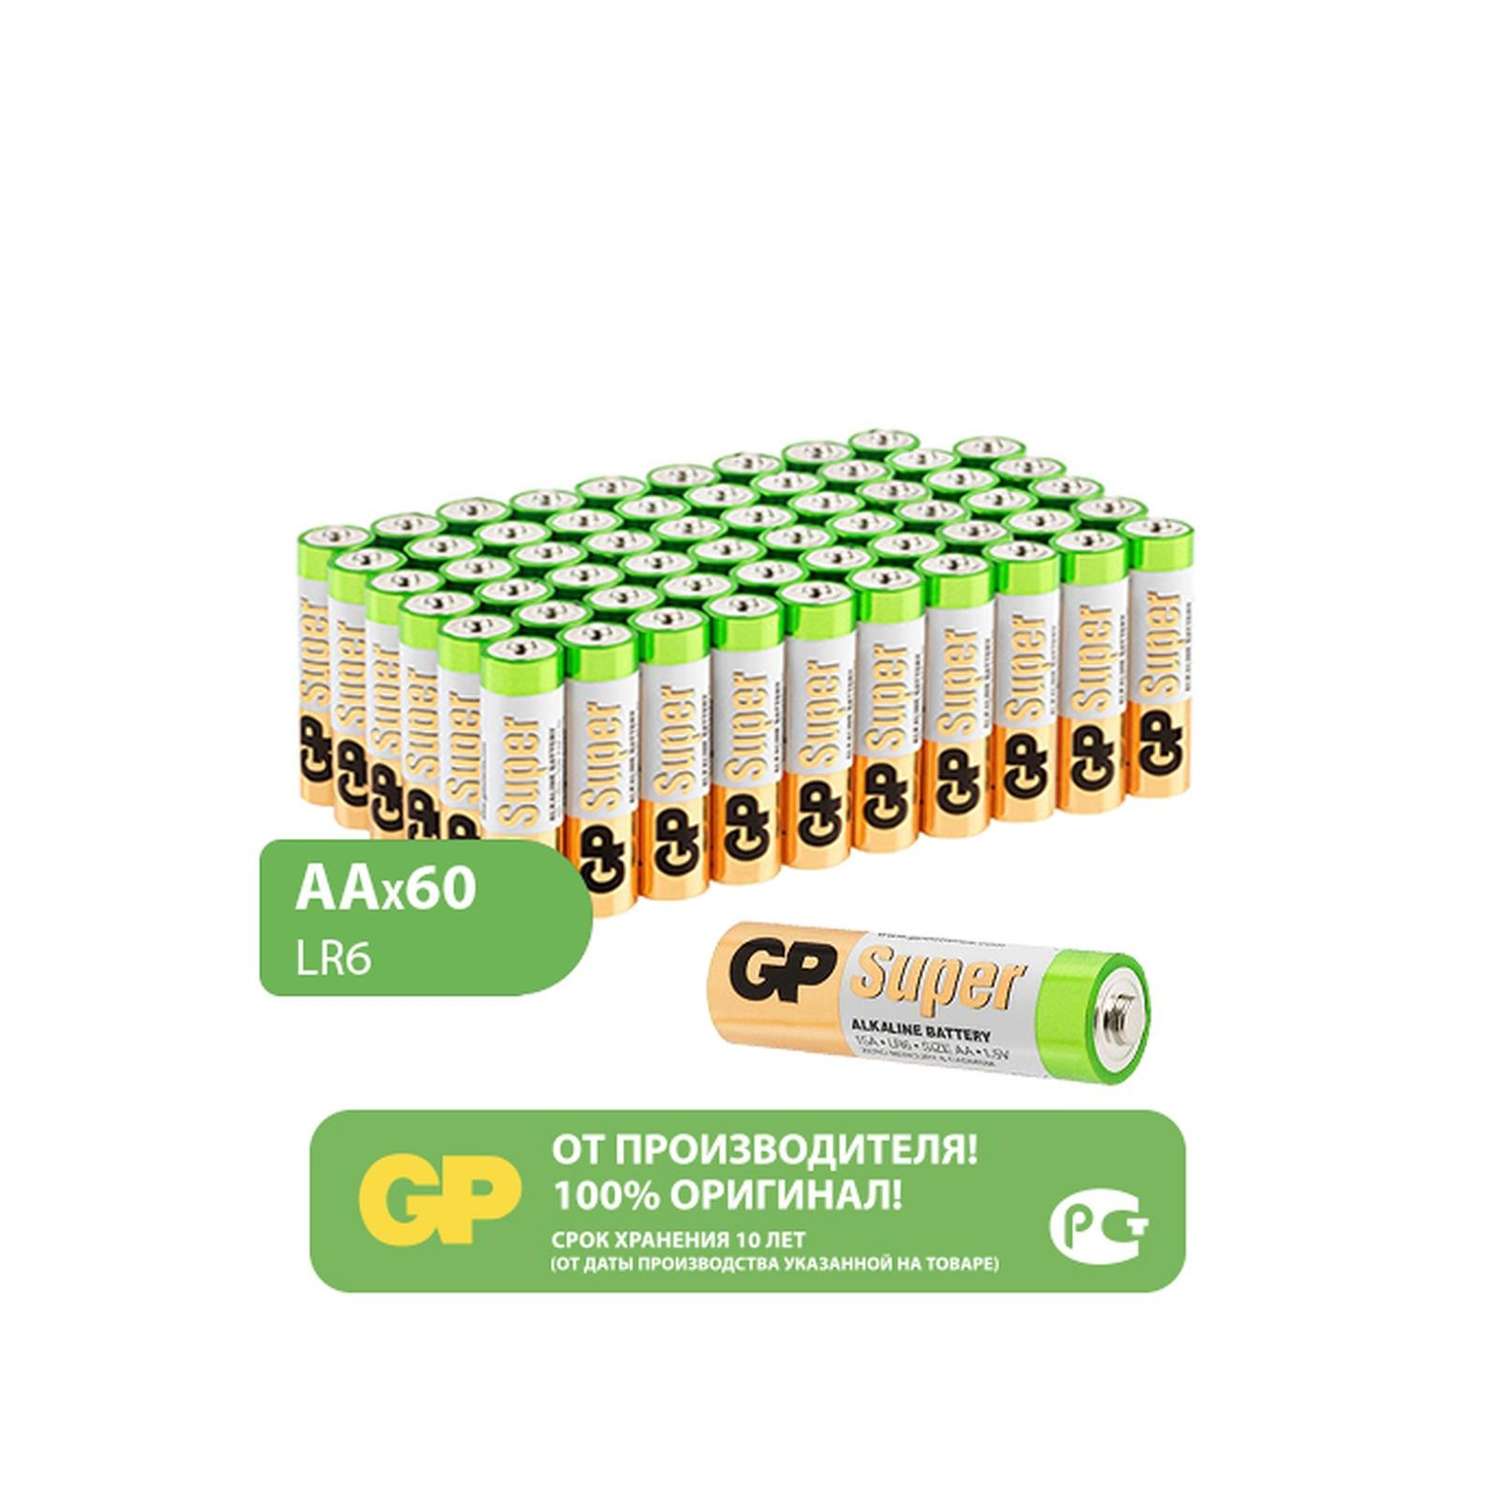 Набор батареек AA(LR6) GP (пальчиковые) 60 штук в упаковке - фото 1